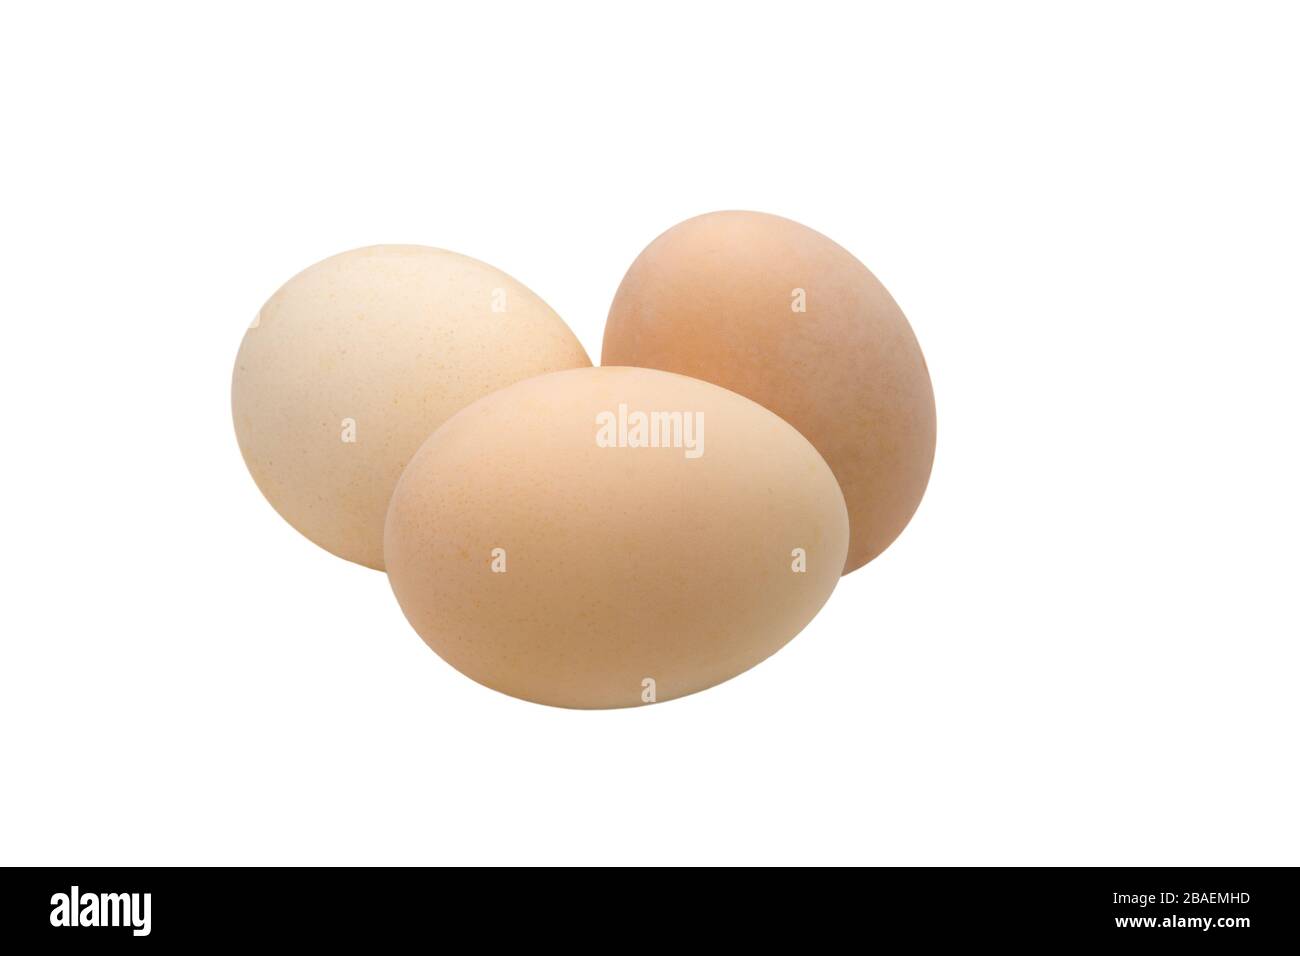 imagen de tres huevos de pollo de color crema sobre fondo blanco Foto de stock